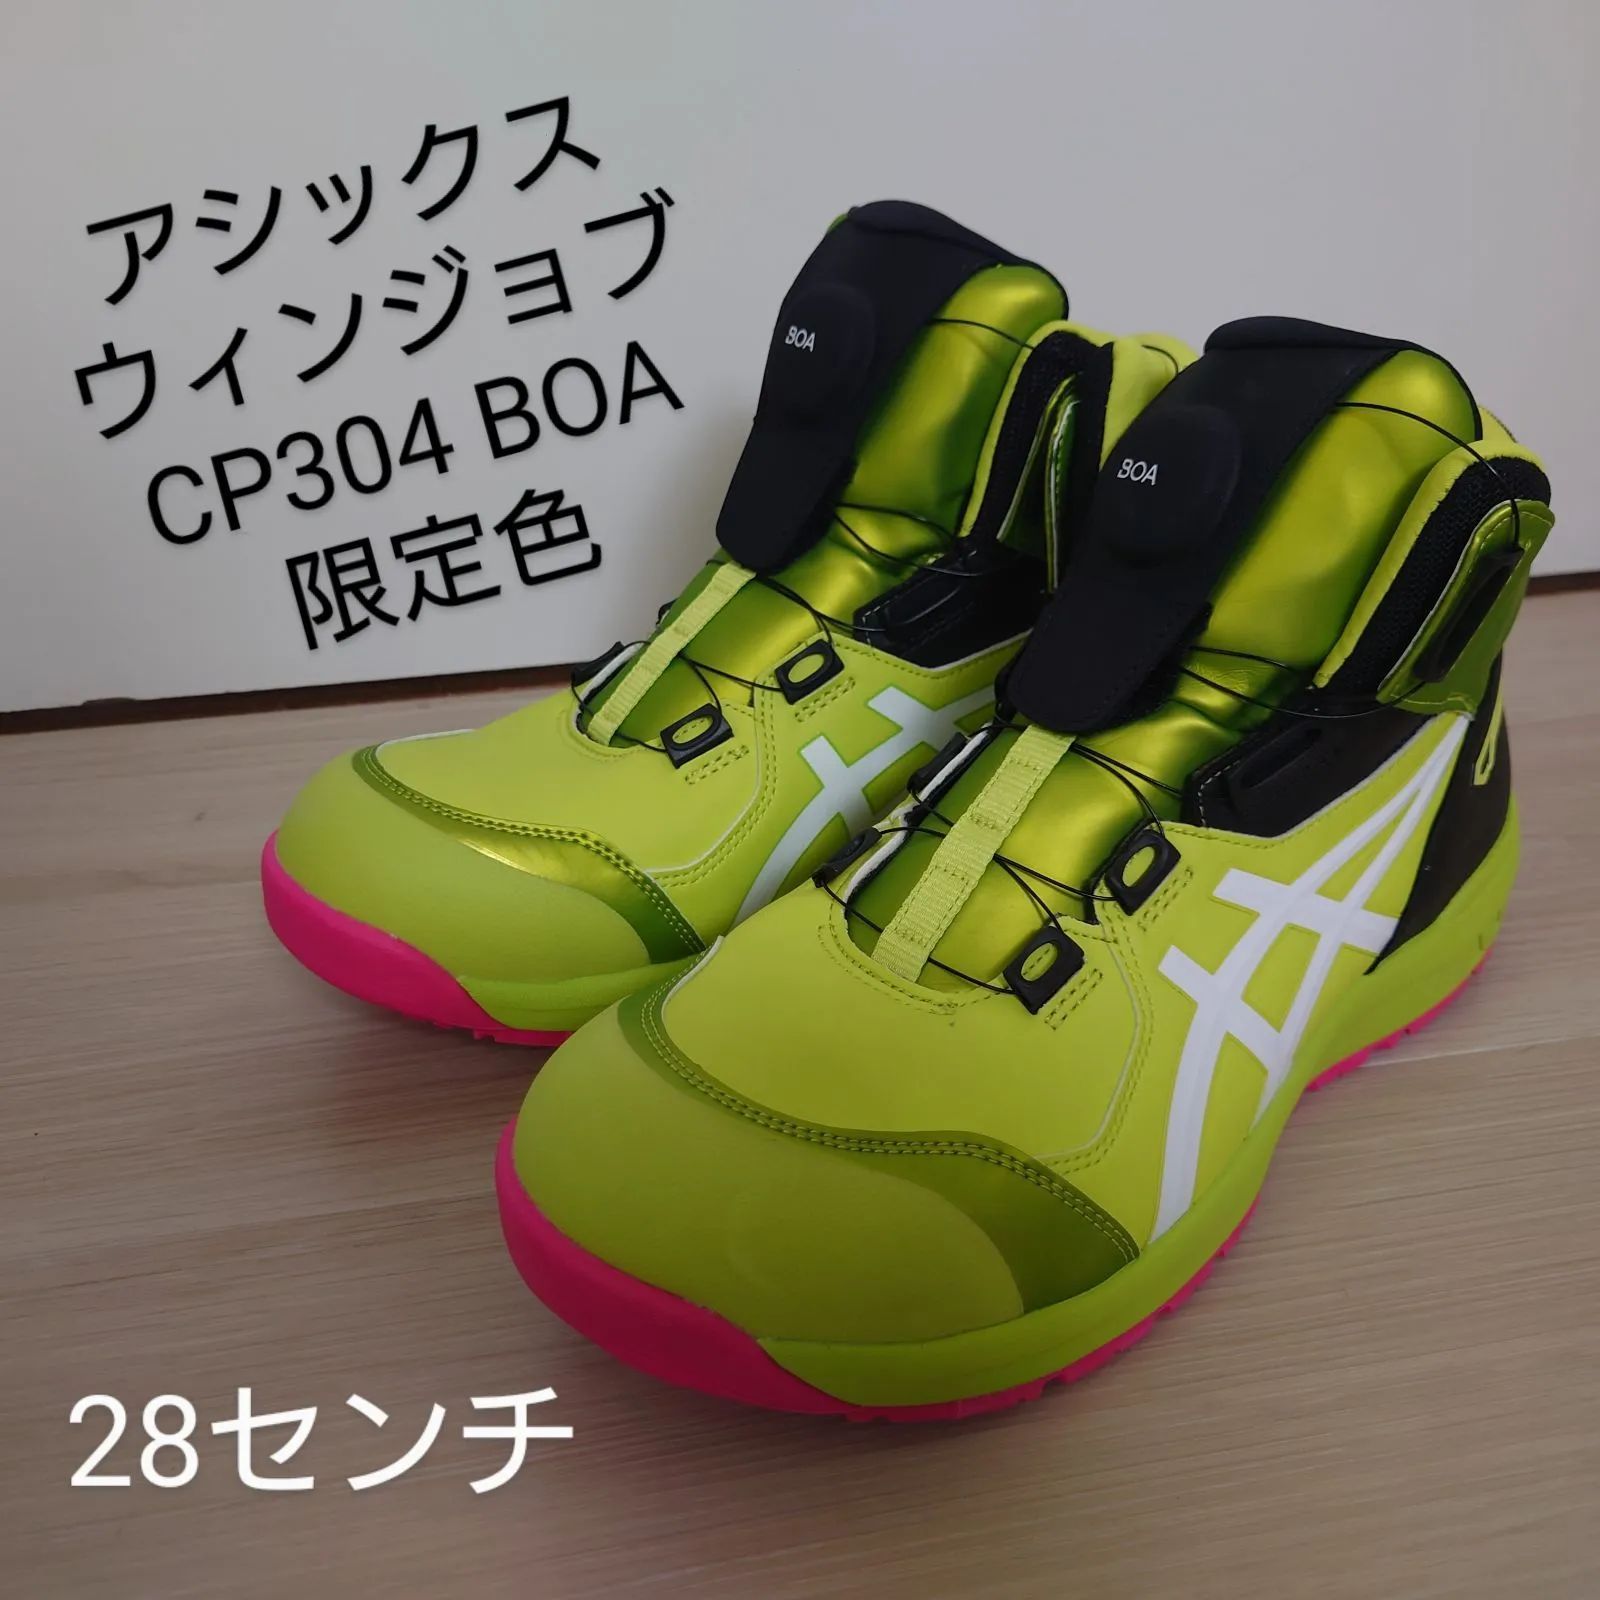 このままご購入可能ですCP304 アシックス 限定 色 カラー BOA 安全靴 ...